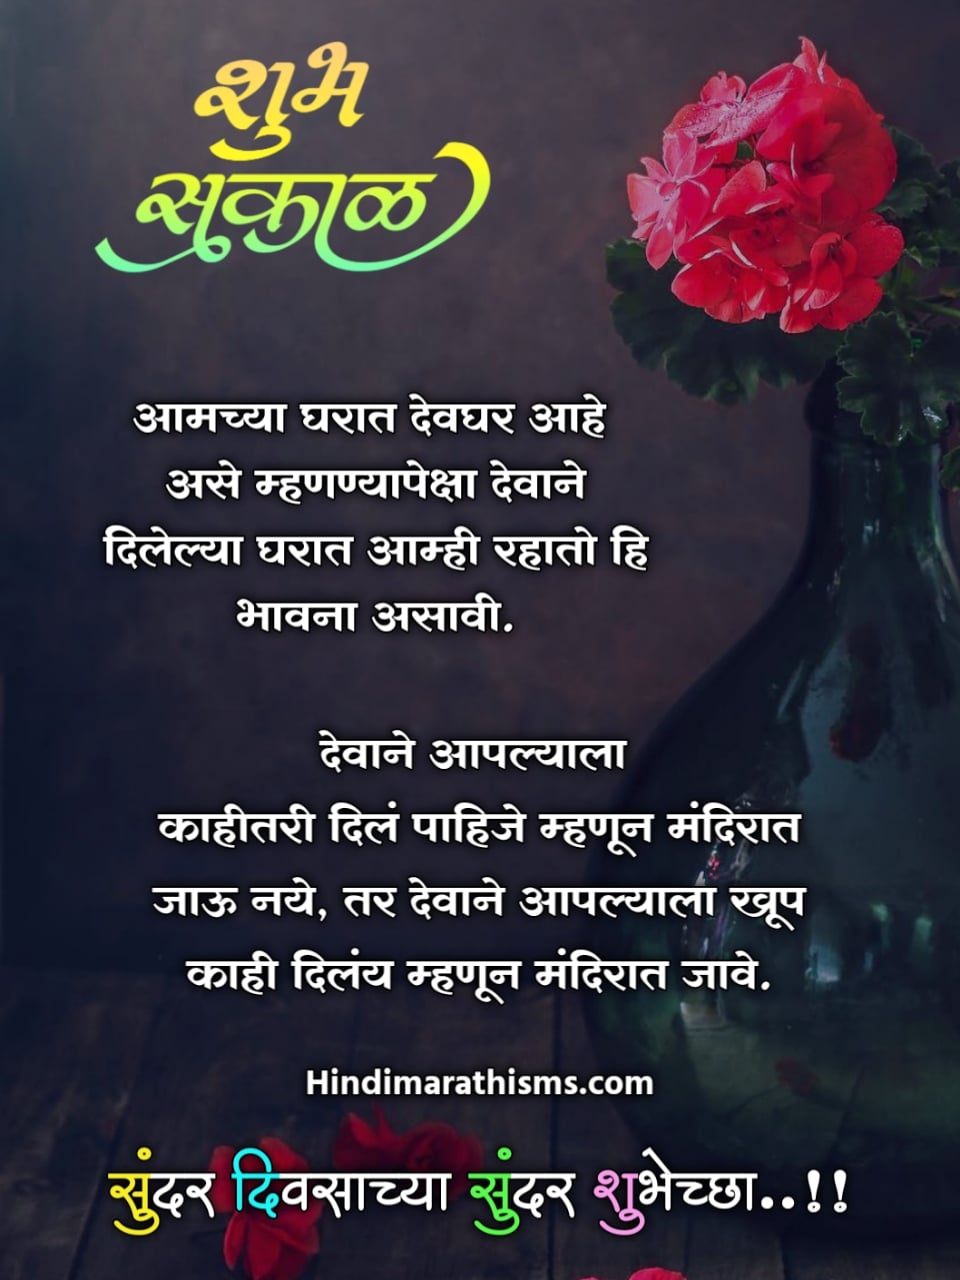 Good Morning Quotes Marathi 500 à¤¶ à¤­ à¤¸à¤ à¤³ à¤¸ à¤ª à¤°à¤­ à¤¤ à¤¸ à¤µ à¤ à¤° à¤®à¤° à¤  Shubh sakal marathi messages (शुभ सकाळ संदेश) (62). good morning quotes marathi 500 à¤¶ à¤­ à¤¸à¤ à¤³ à¤¸ à¤ª à¤°à¤­ à¤¤ à¤¸ à¤µ à¤ à¤° à¤®à¤° à¤ 